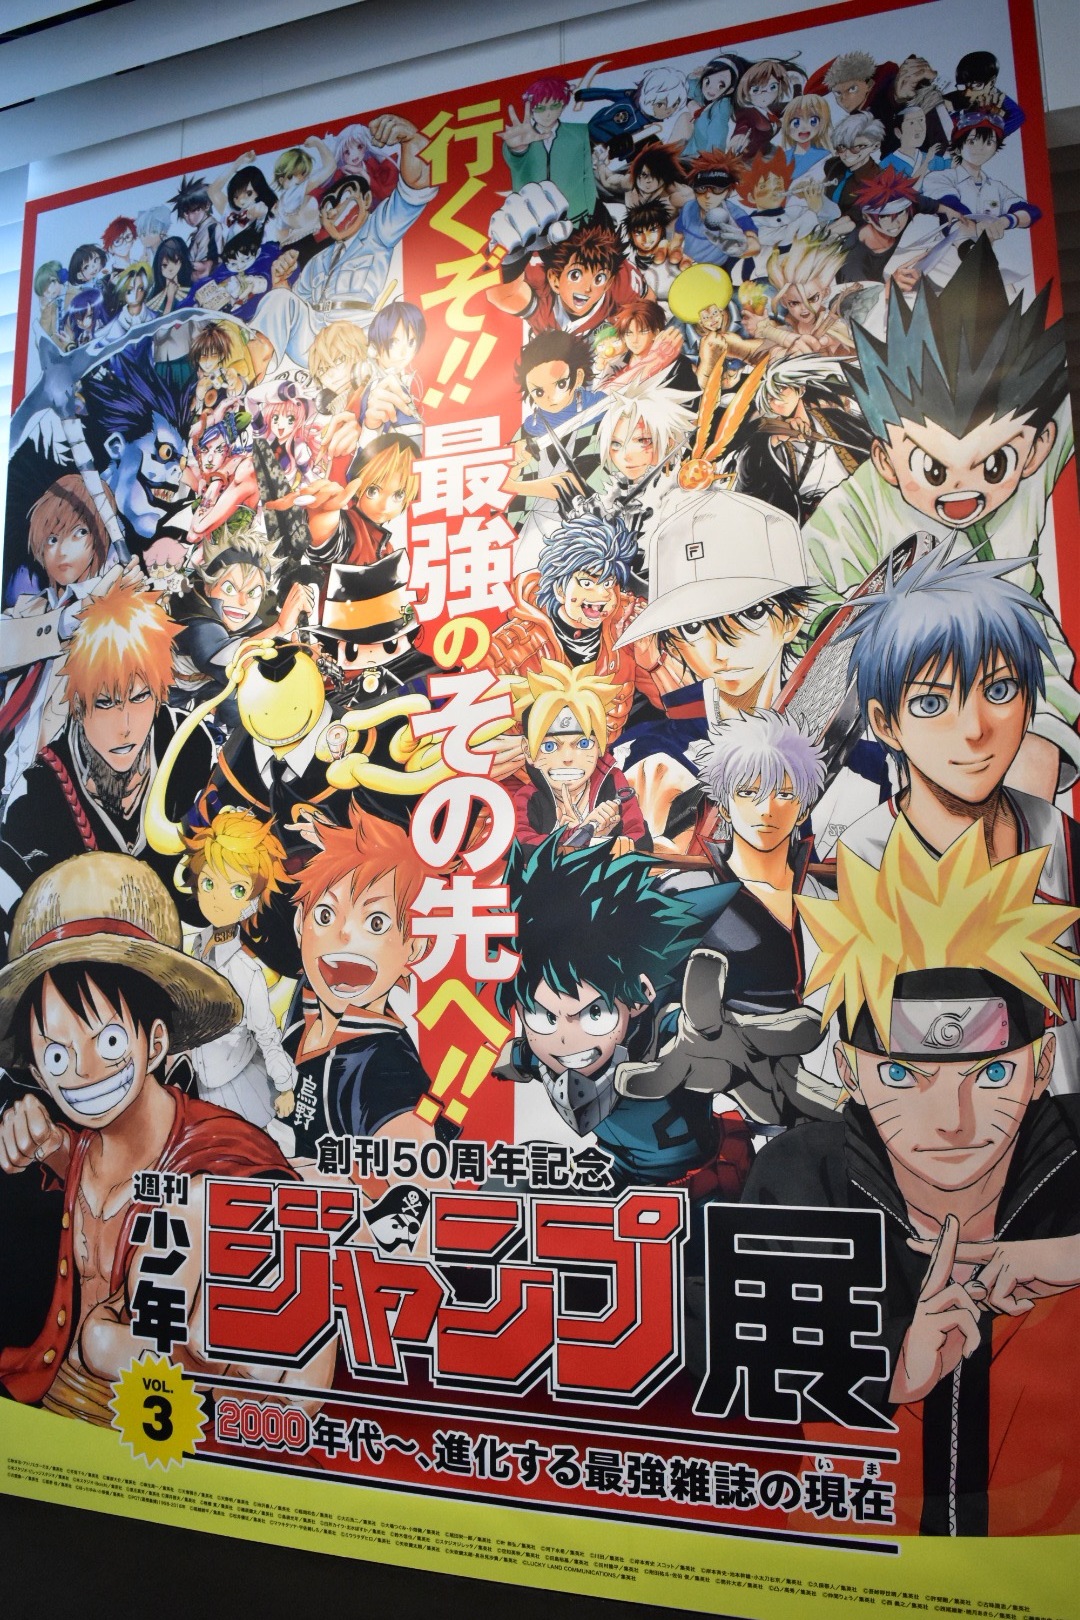 週刊少年ジャンプ展vol 3 レポート One Piece や Naruto ナルト など 原画総数440点以上 Spice エンタメ特化型情報メディア スパイス